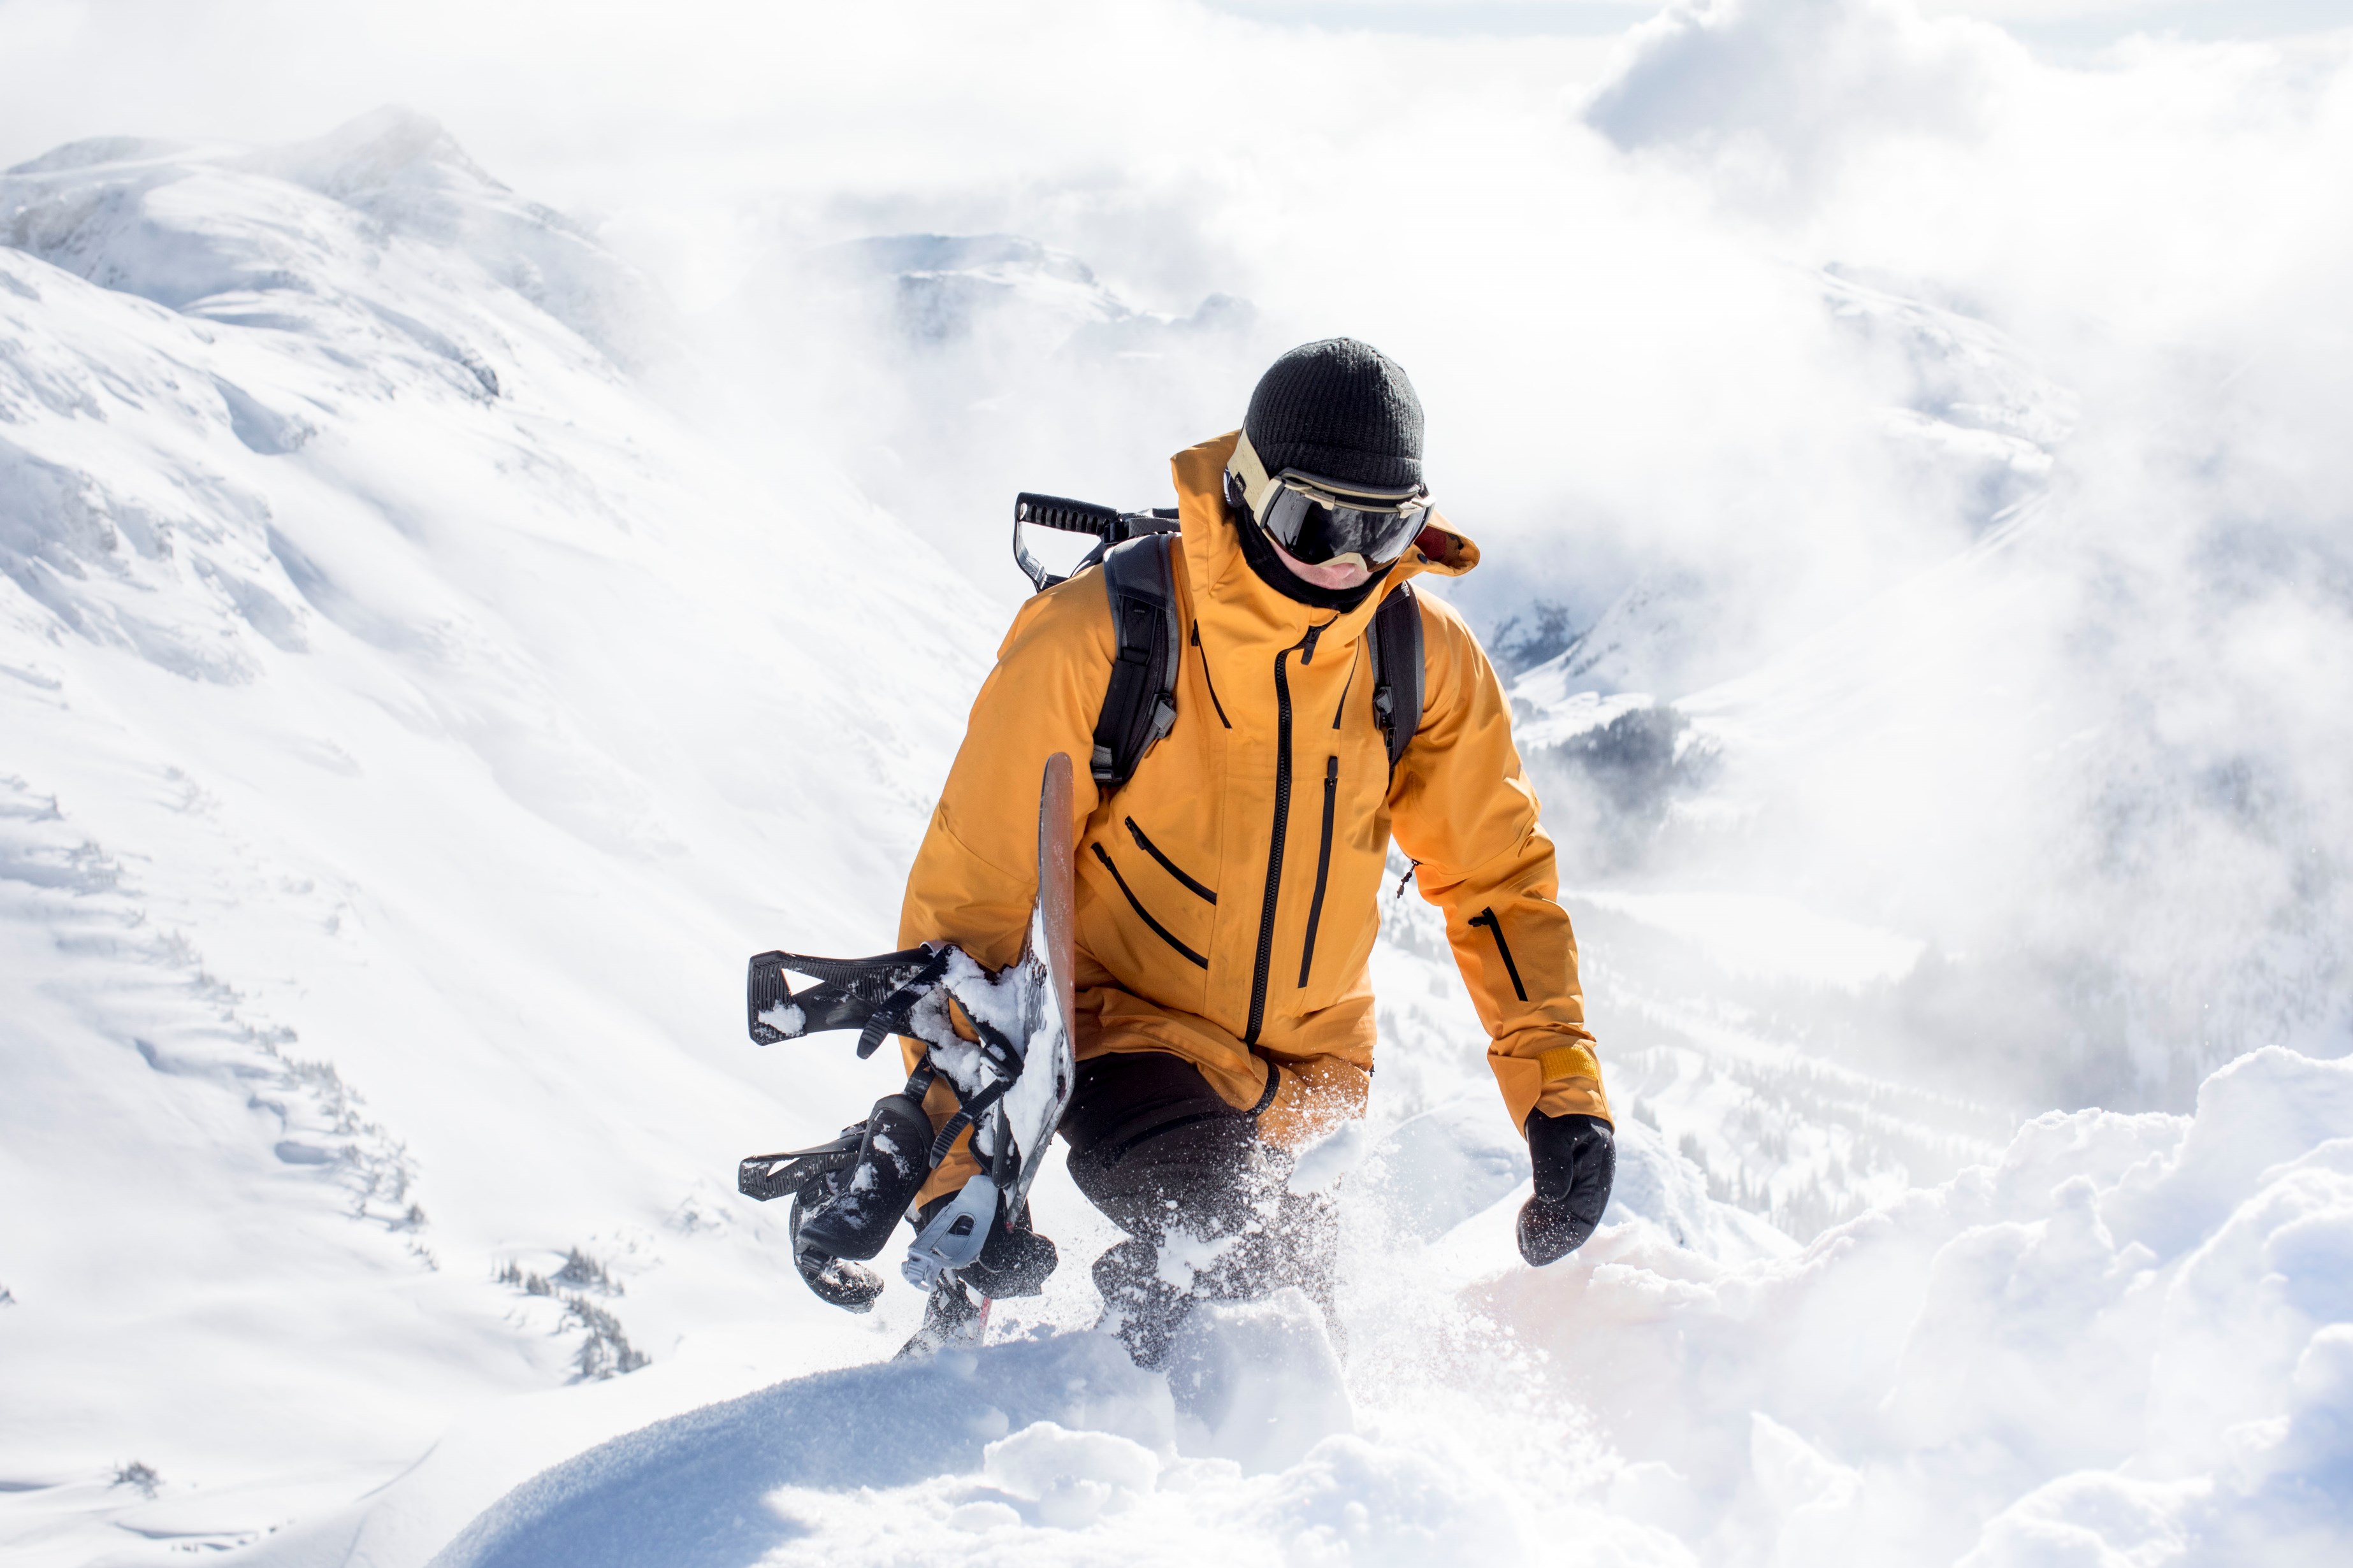 冷冽冬季來襲 The North Face Snow Blazers系列帶你馳騁世界雪地 從城市野到雪場！滑雪機能防護結合都市感 重新定義雪地時尚